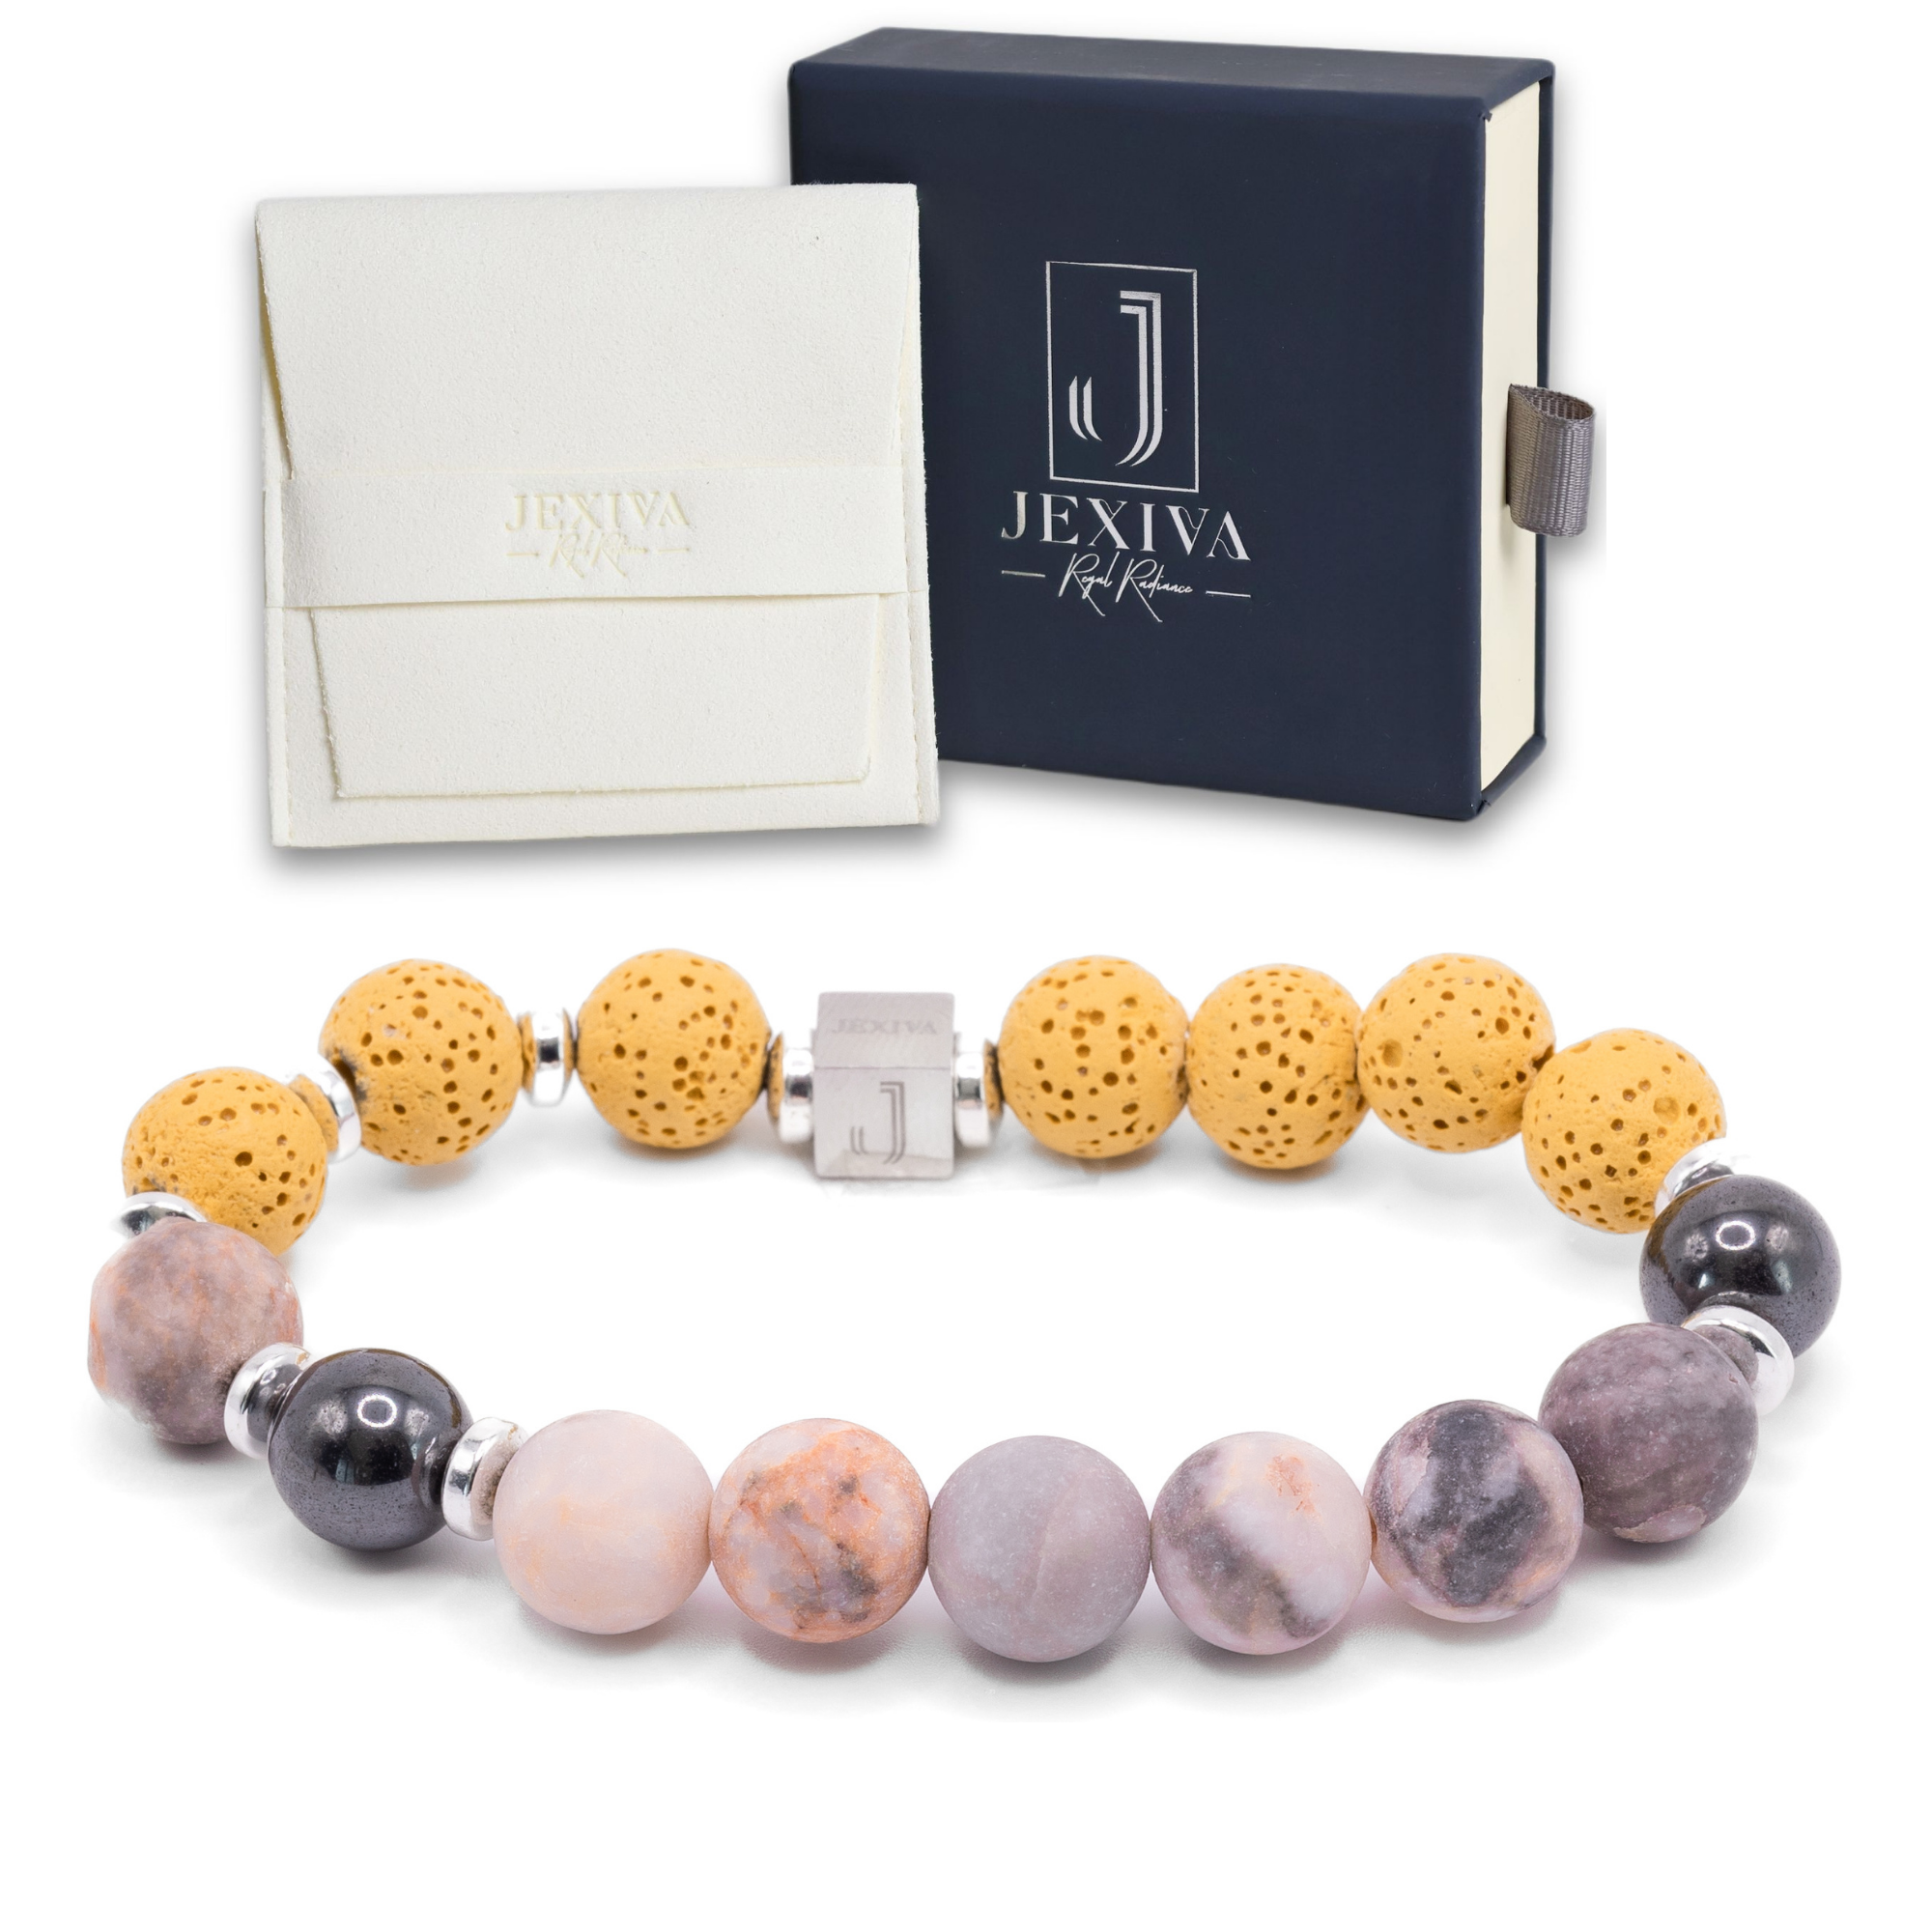 Luxury Gift Sterling Silver 925 Infinite Love Bracelet For Daughter From  Mum | eBay